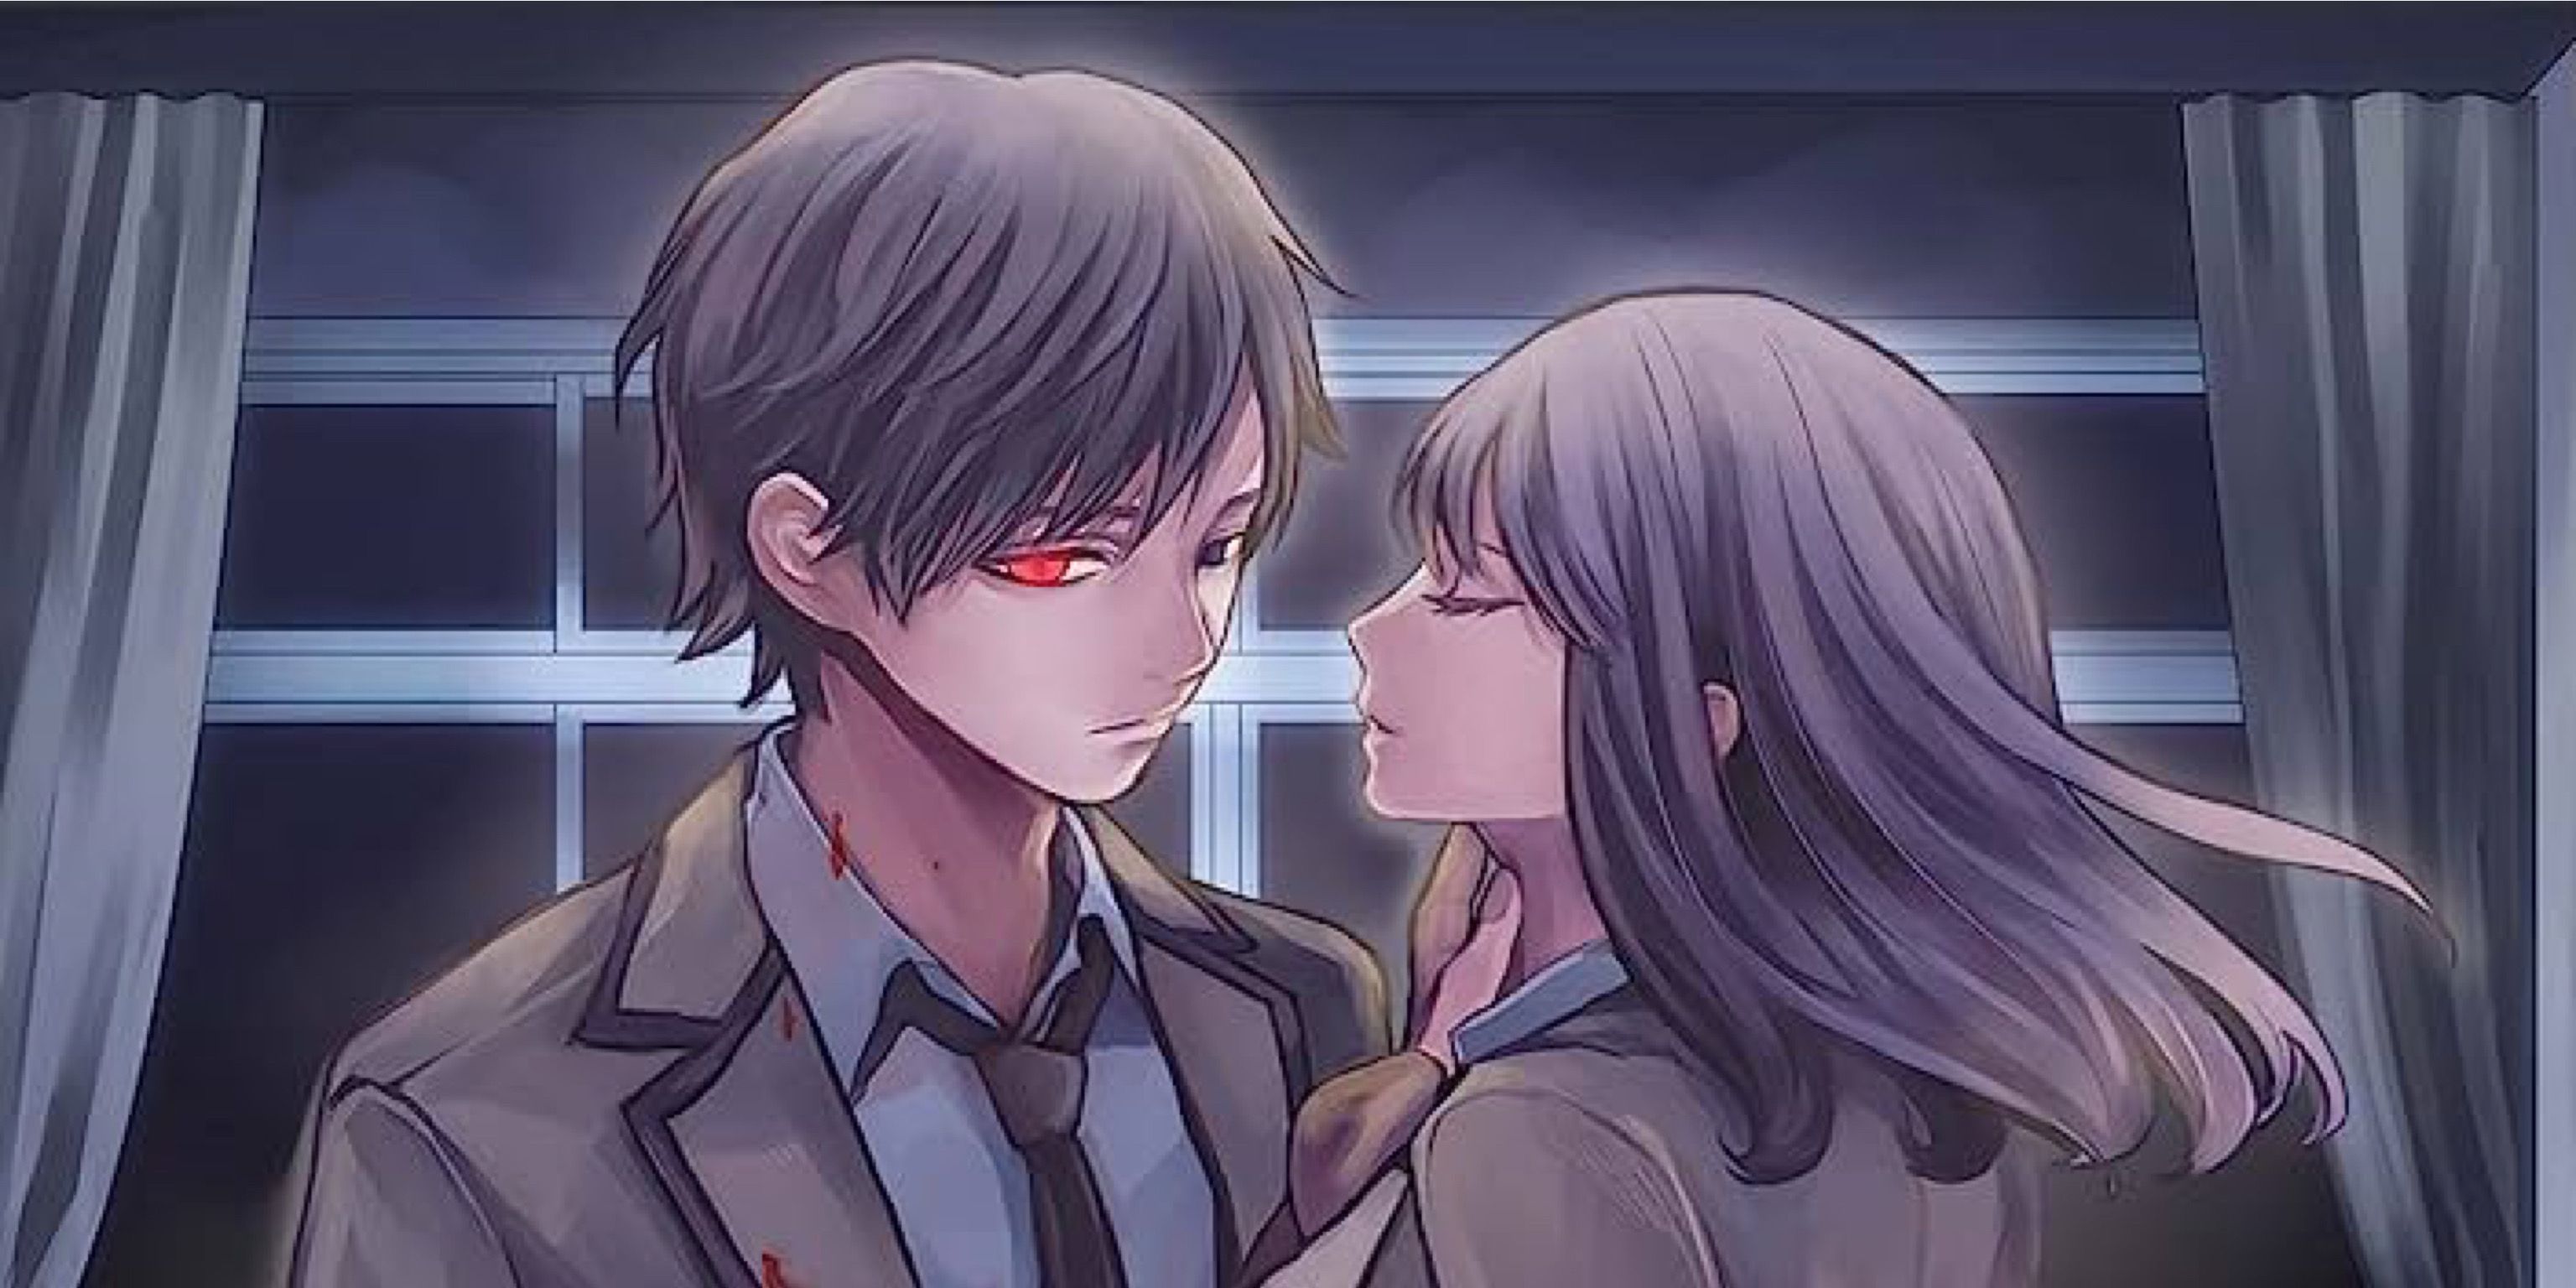 Hanasono trying to kiss Kamishiro in the cover of I Love You, So I Kill You.